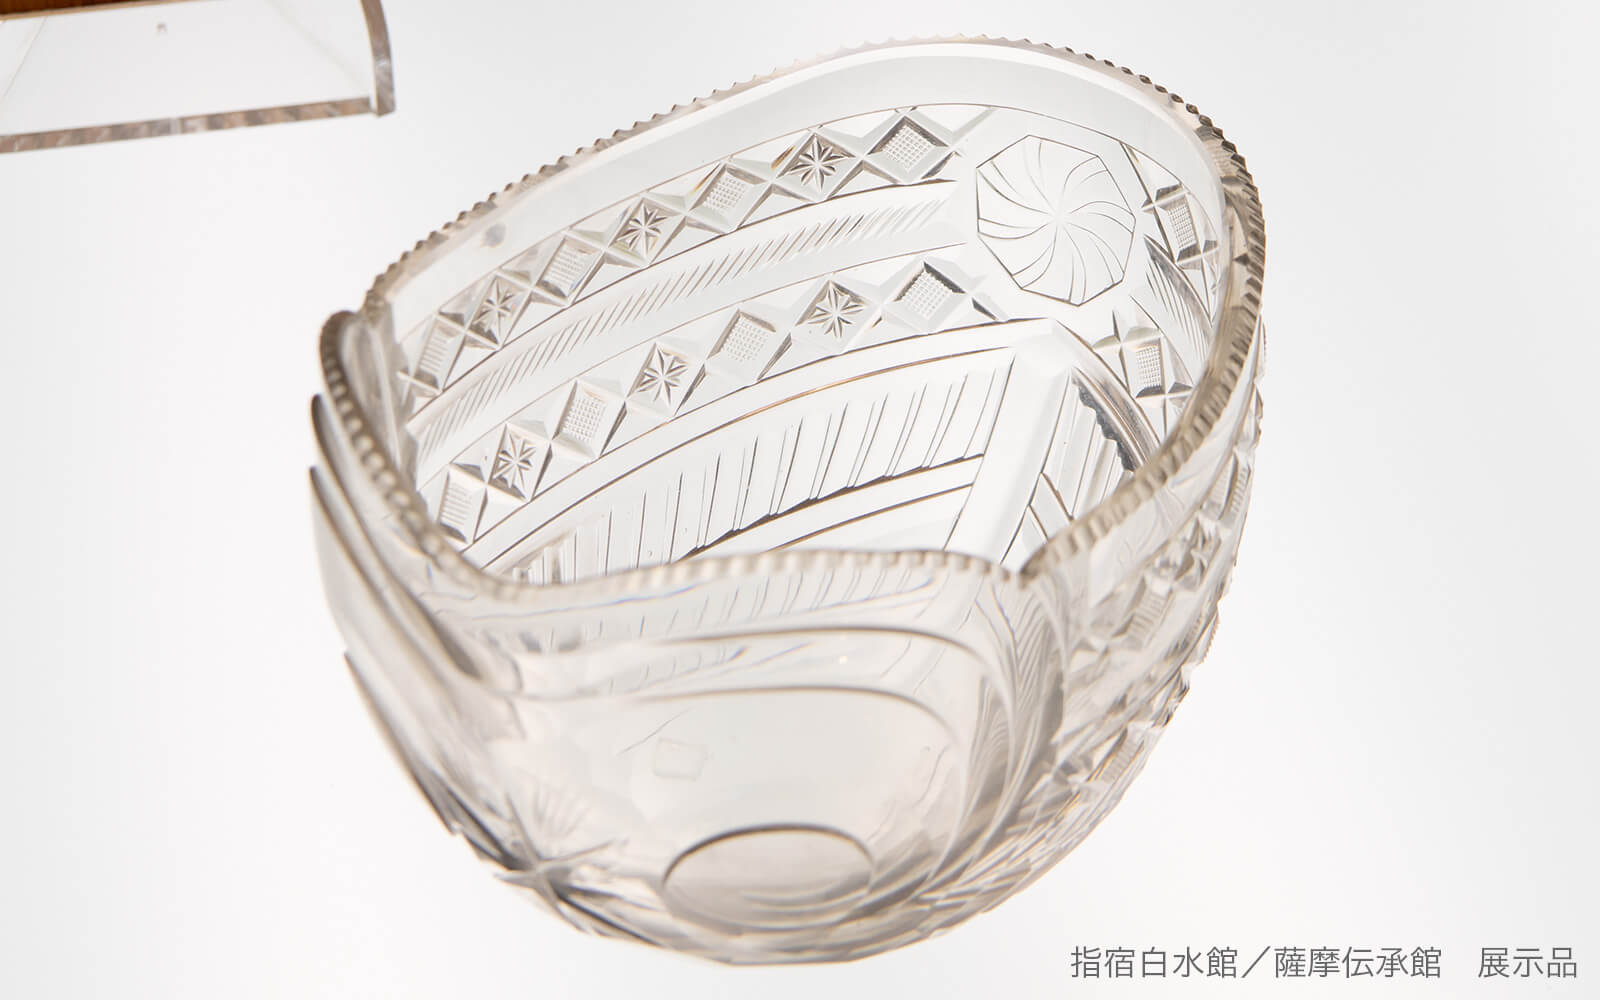 時価数千万といわれる江戸時代に作られた薩摩切子「透明ガラス船形鉢」